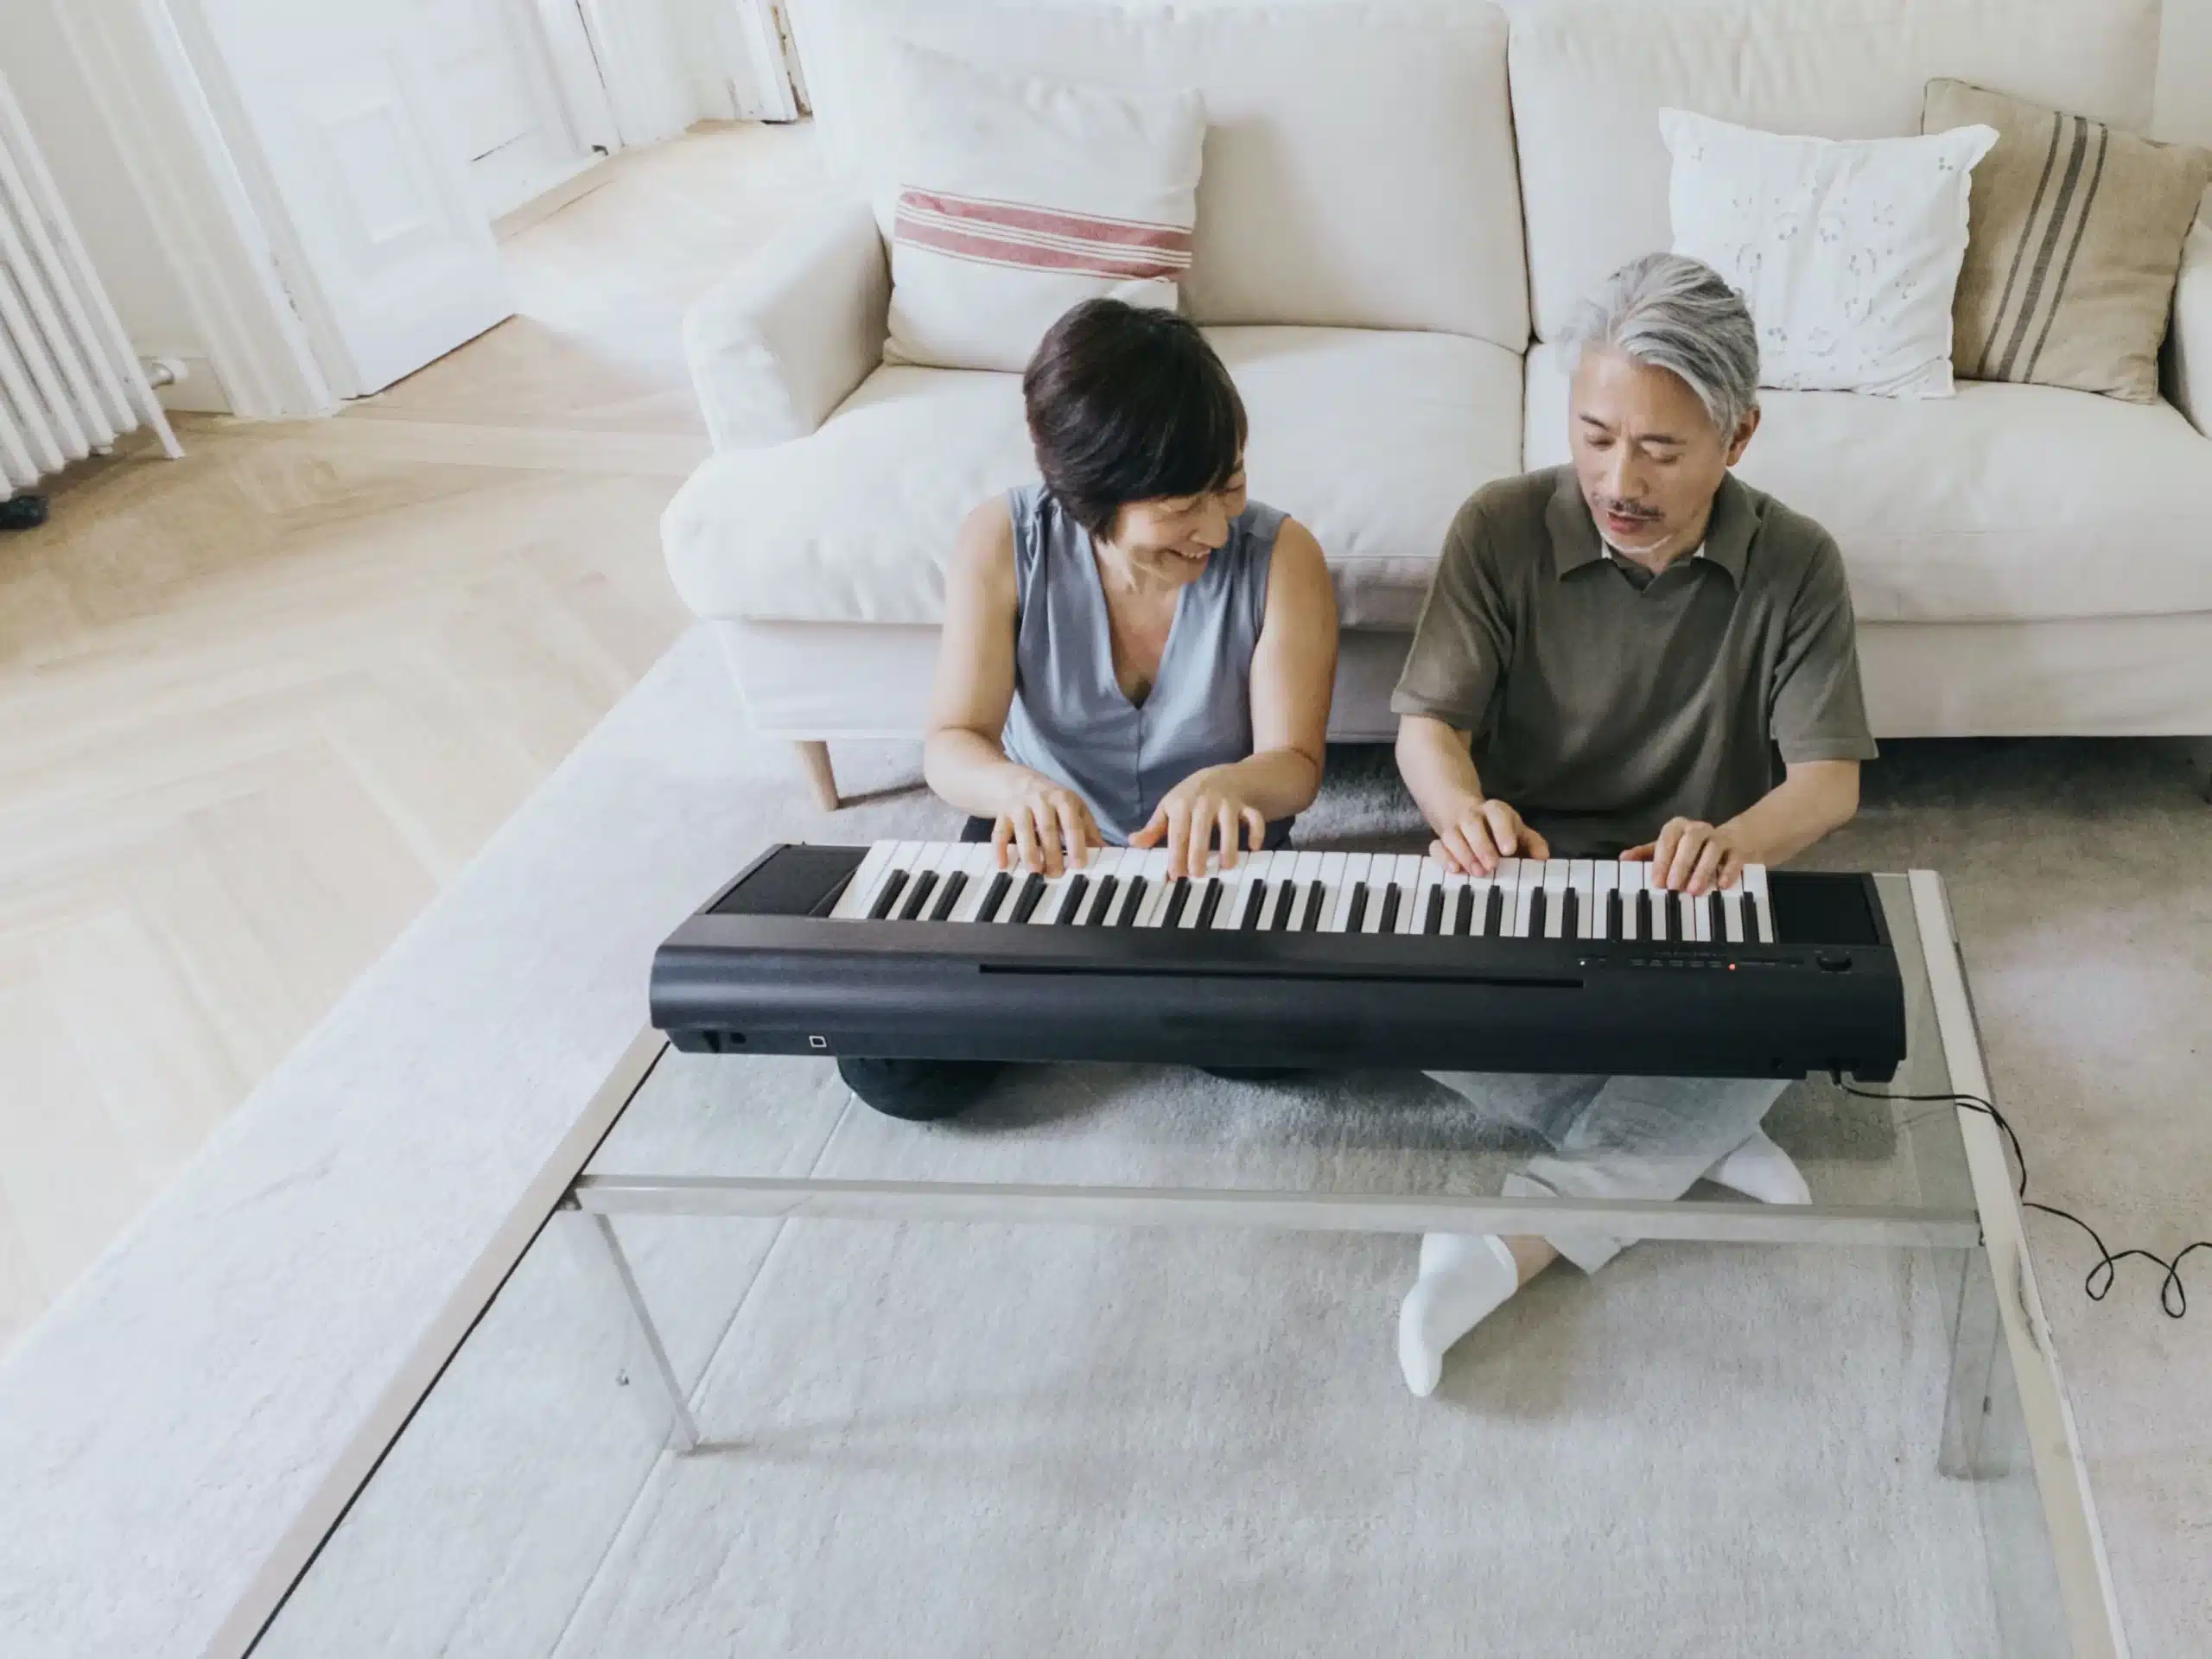 Le langage de l'amour, deux personnes âgées font du piano au sol